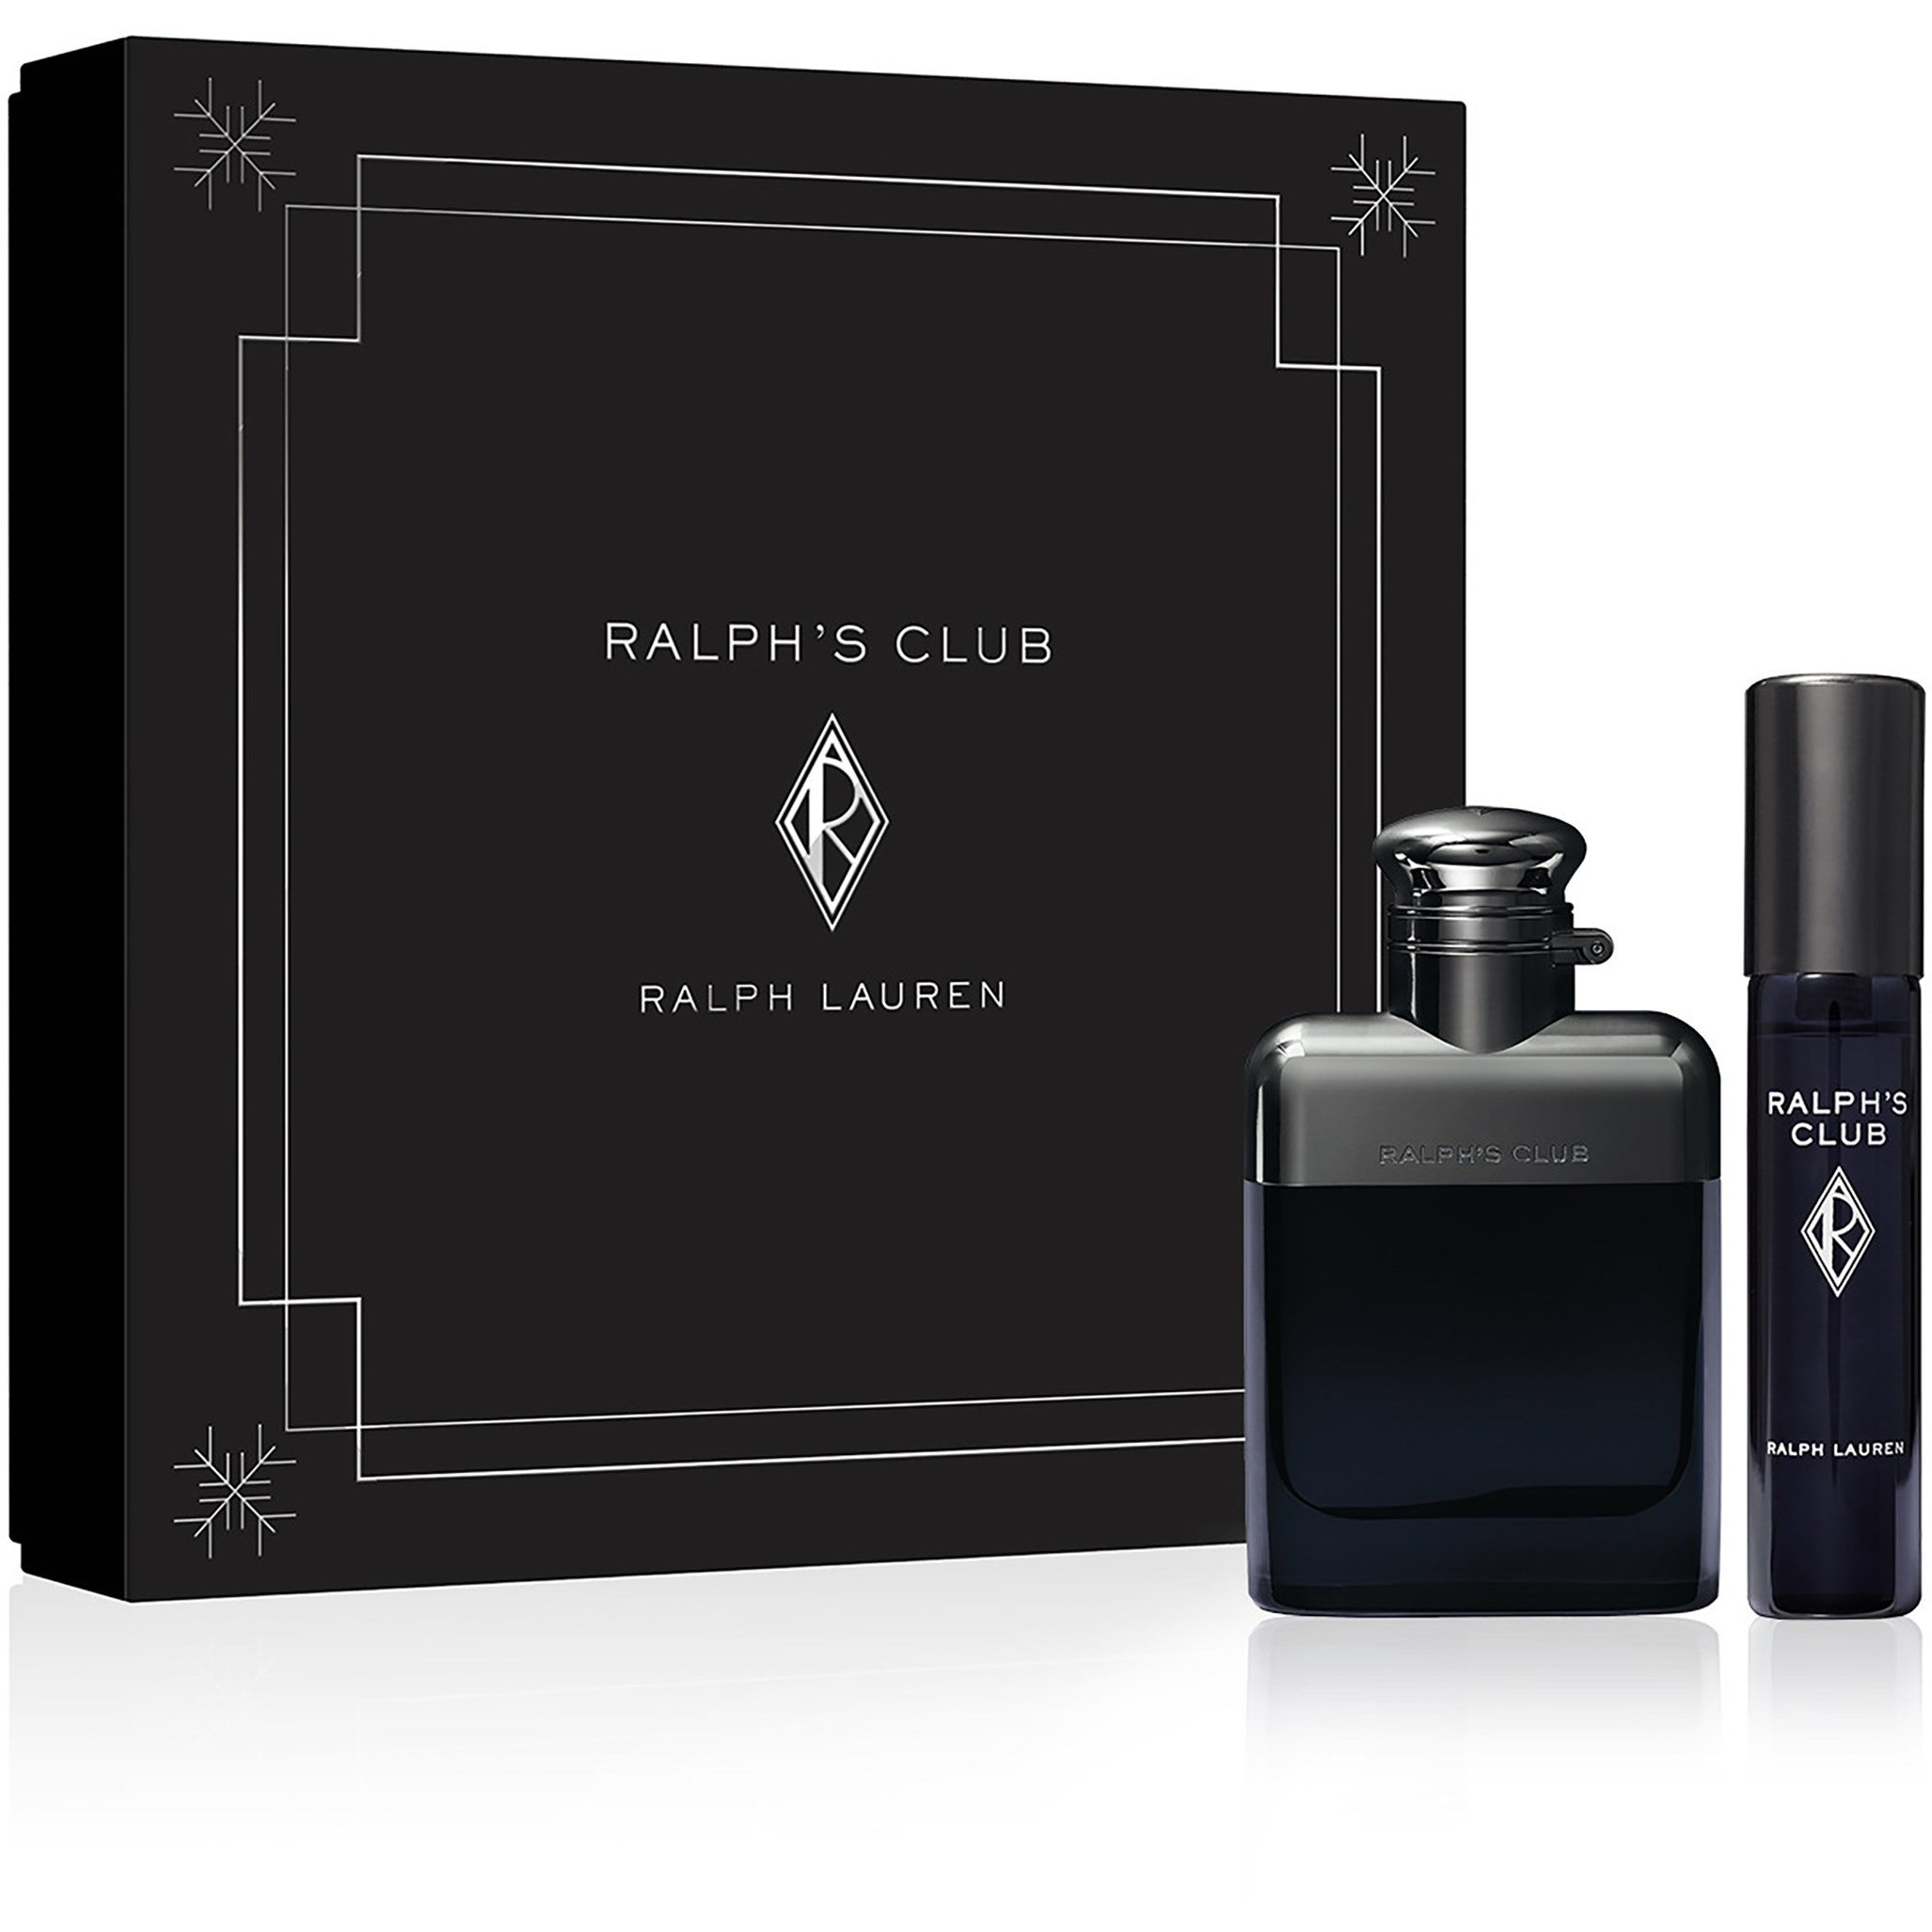 Ralph Lauren Ralph's Club Eau de Parfum Gift Set